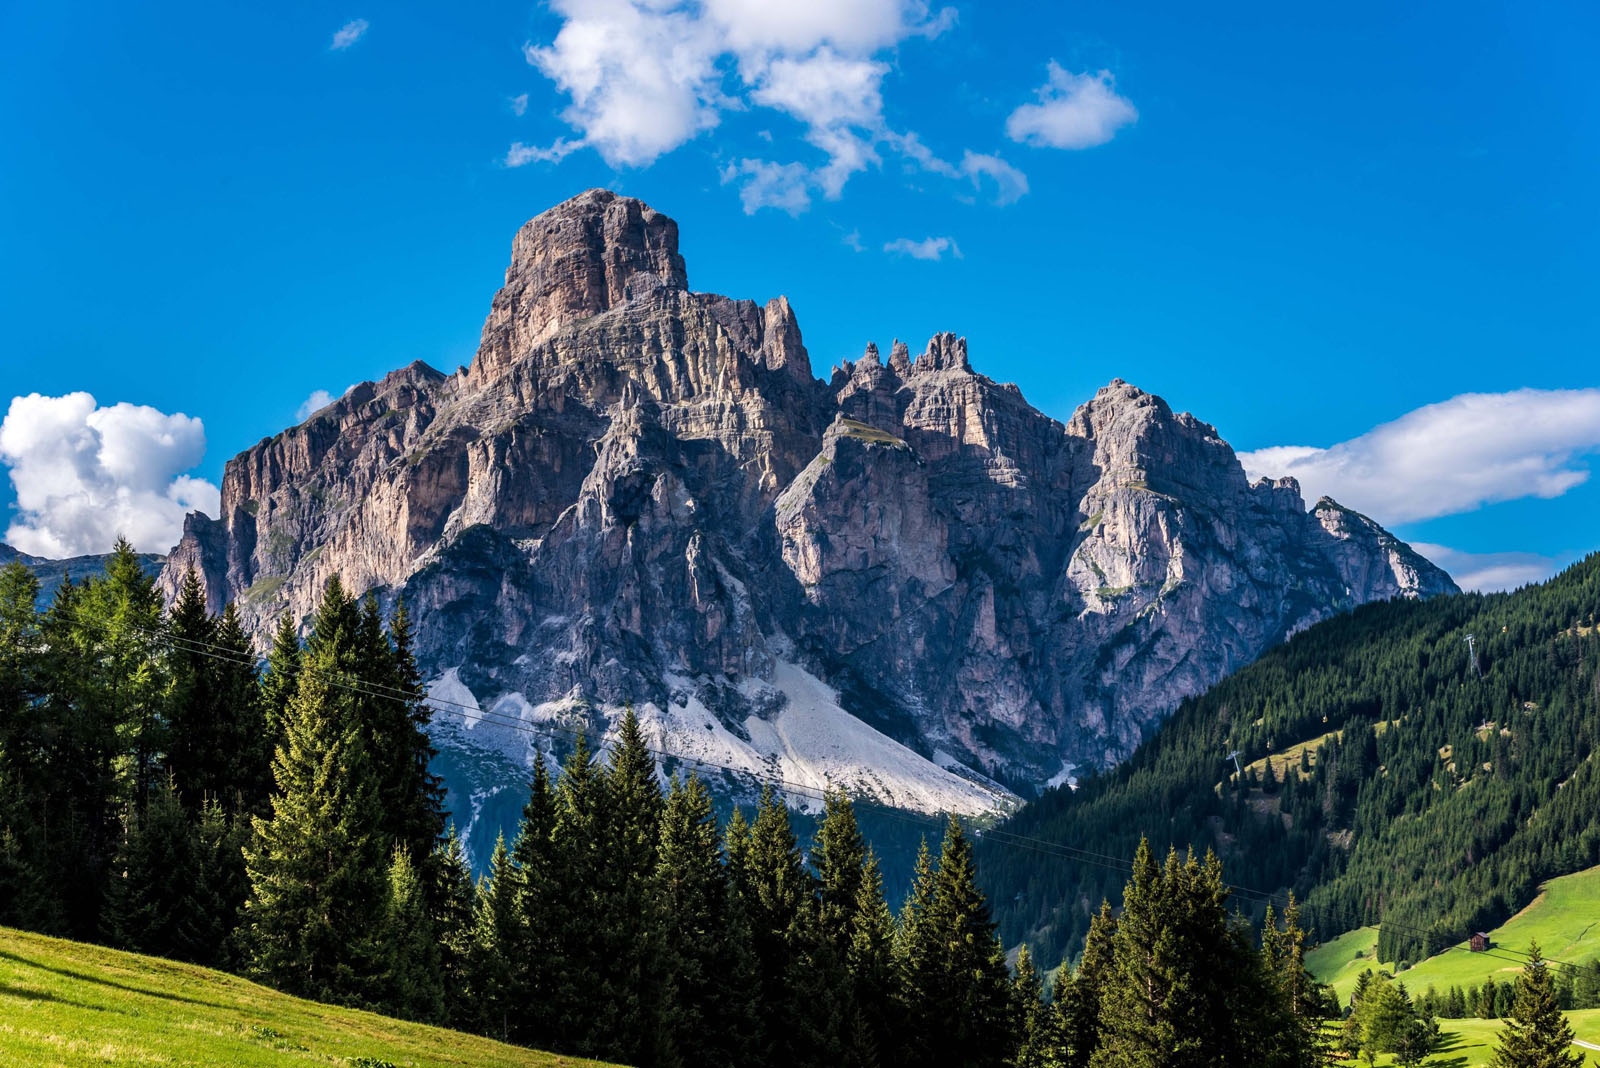 Dolomites Italy - Mountains of Passo Sella